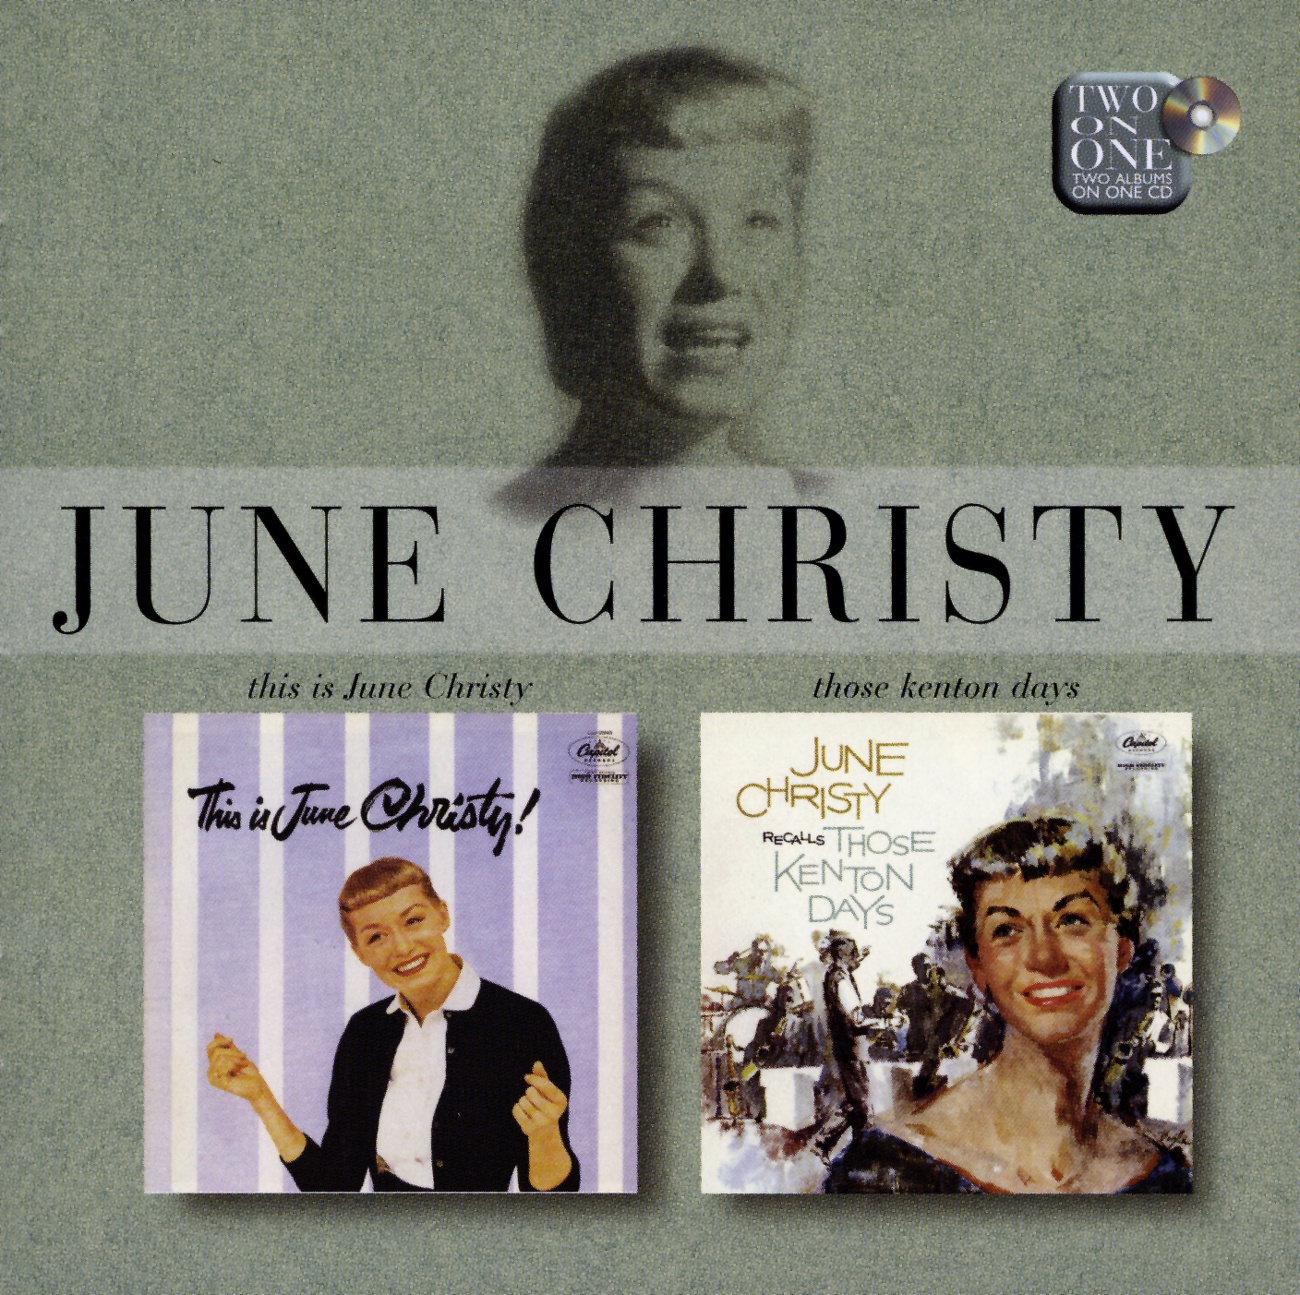 This Is June Christy/Recalls Those Kenton Days